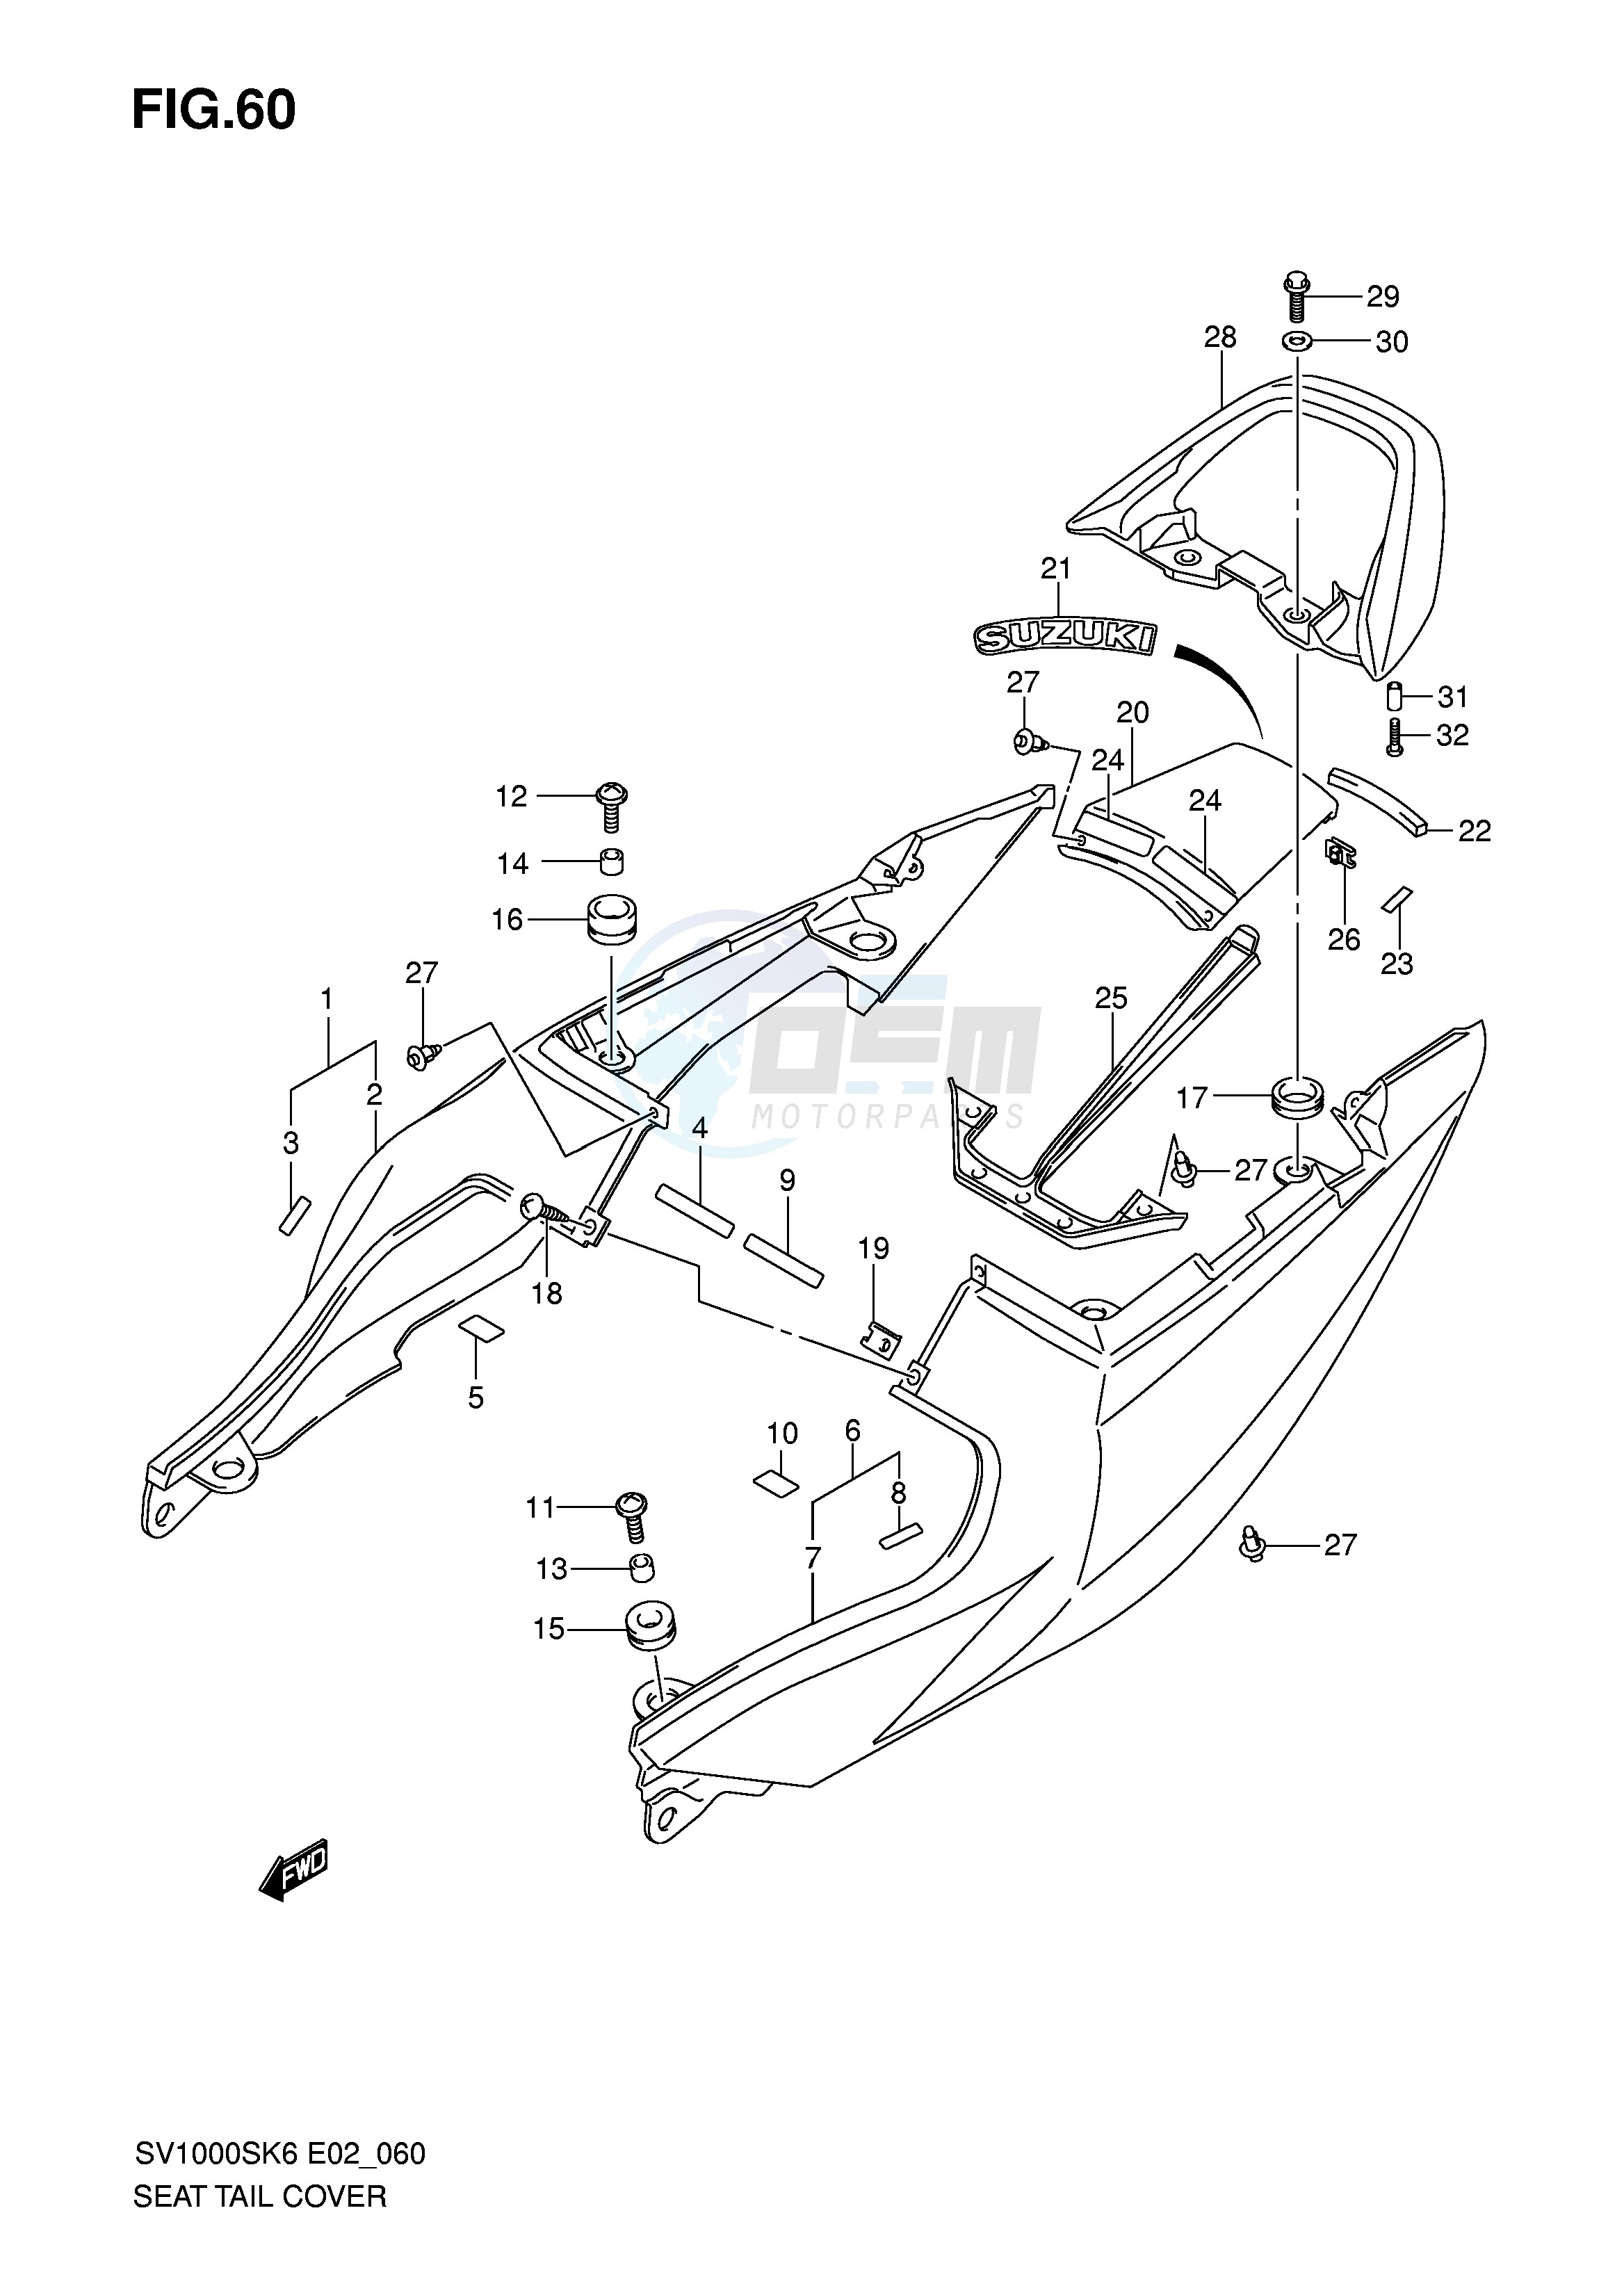 SEAT TAIL COVER (SV1000SK6 S1K6 S2K6 SK7 S2K7) blueprint